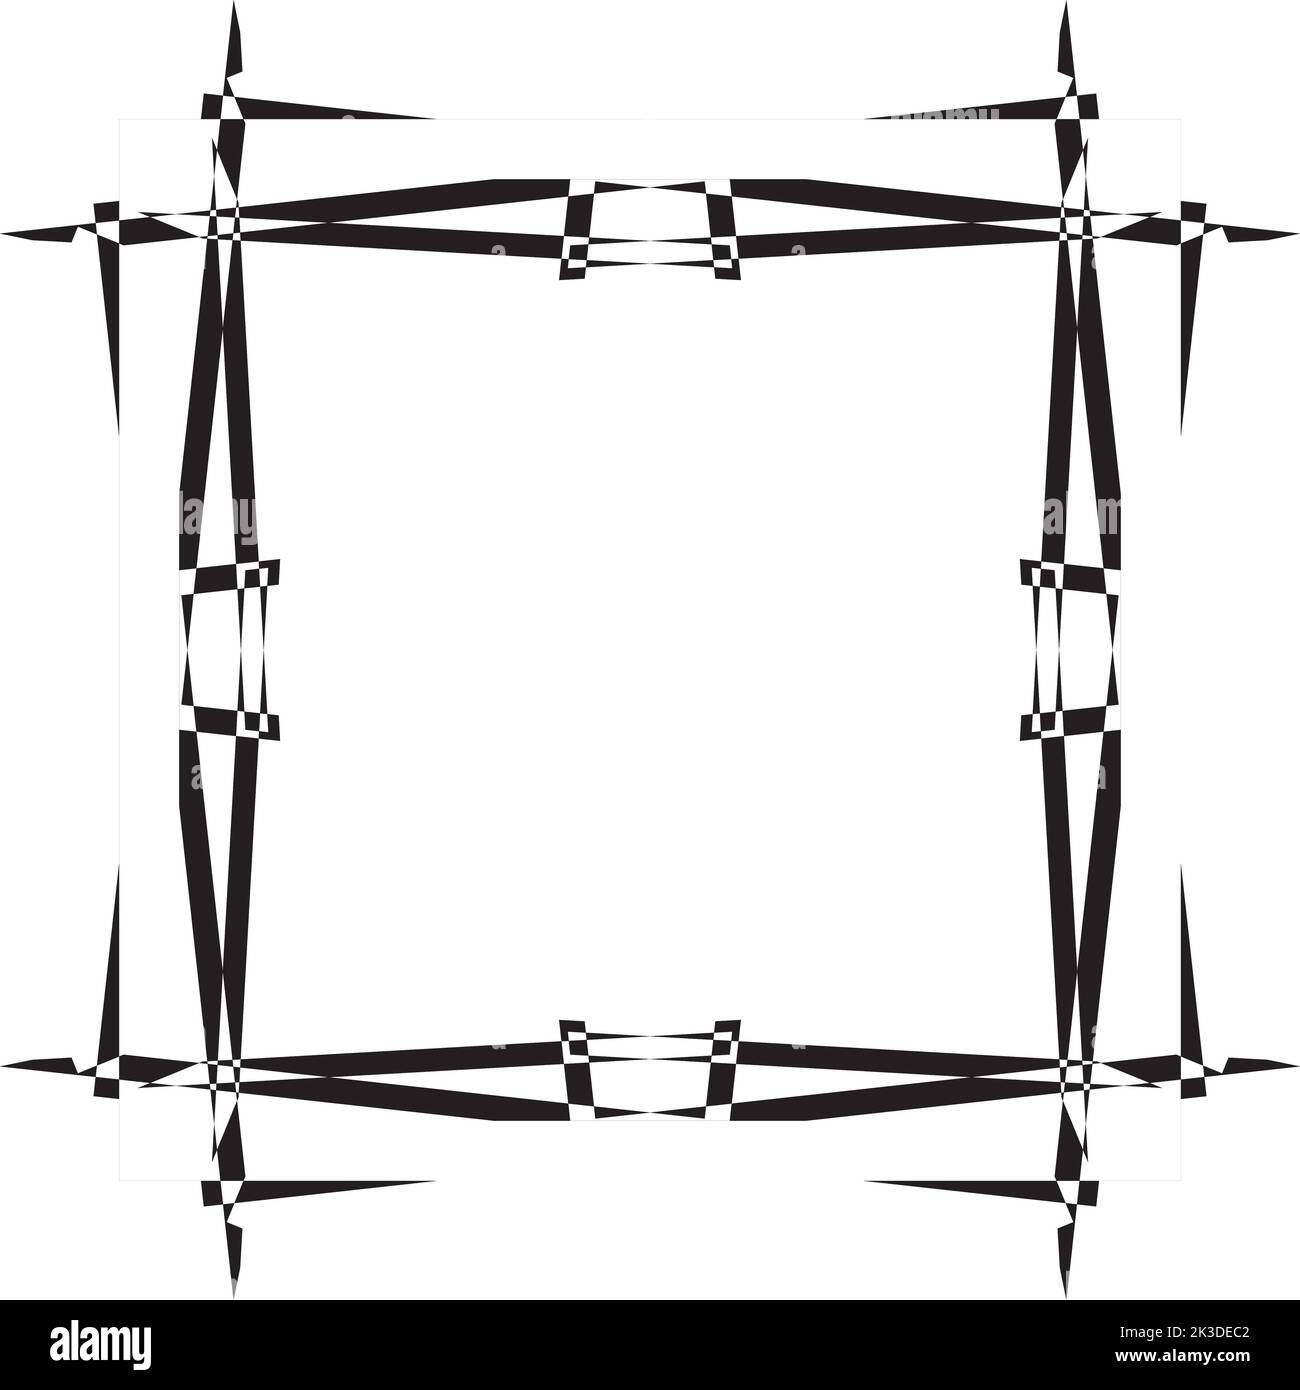 Astratto diamante isquare ntersected anche psy frame in prospettiva nero su sfondo trasparente taglio designer Illustrazione Vettoriale